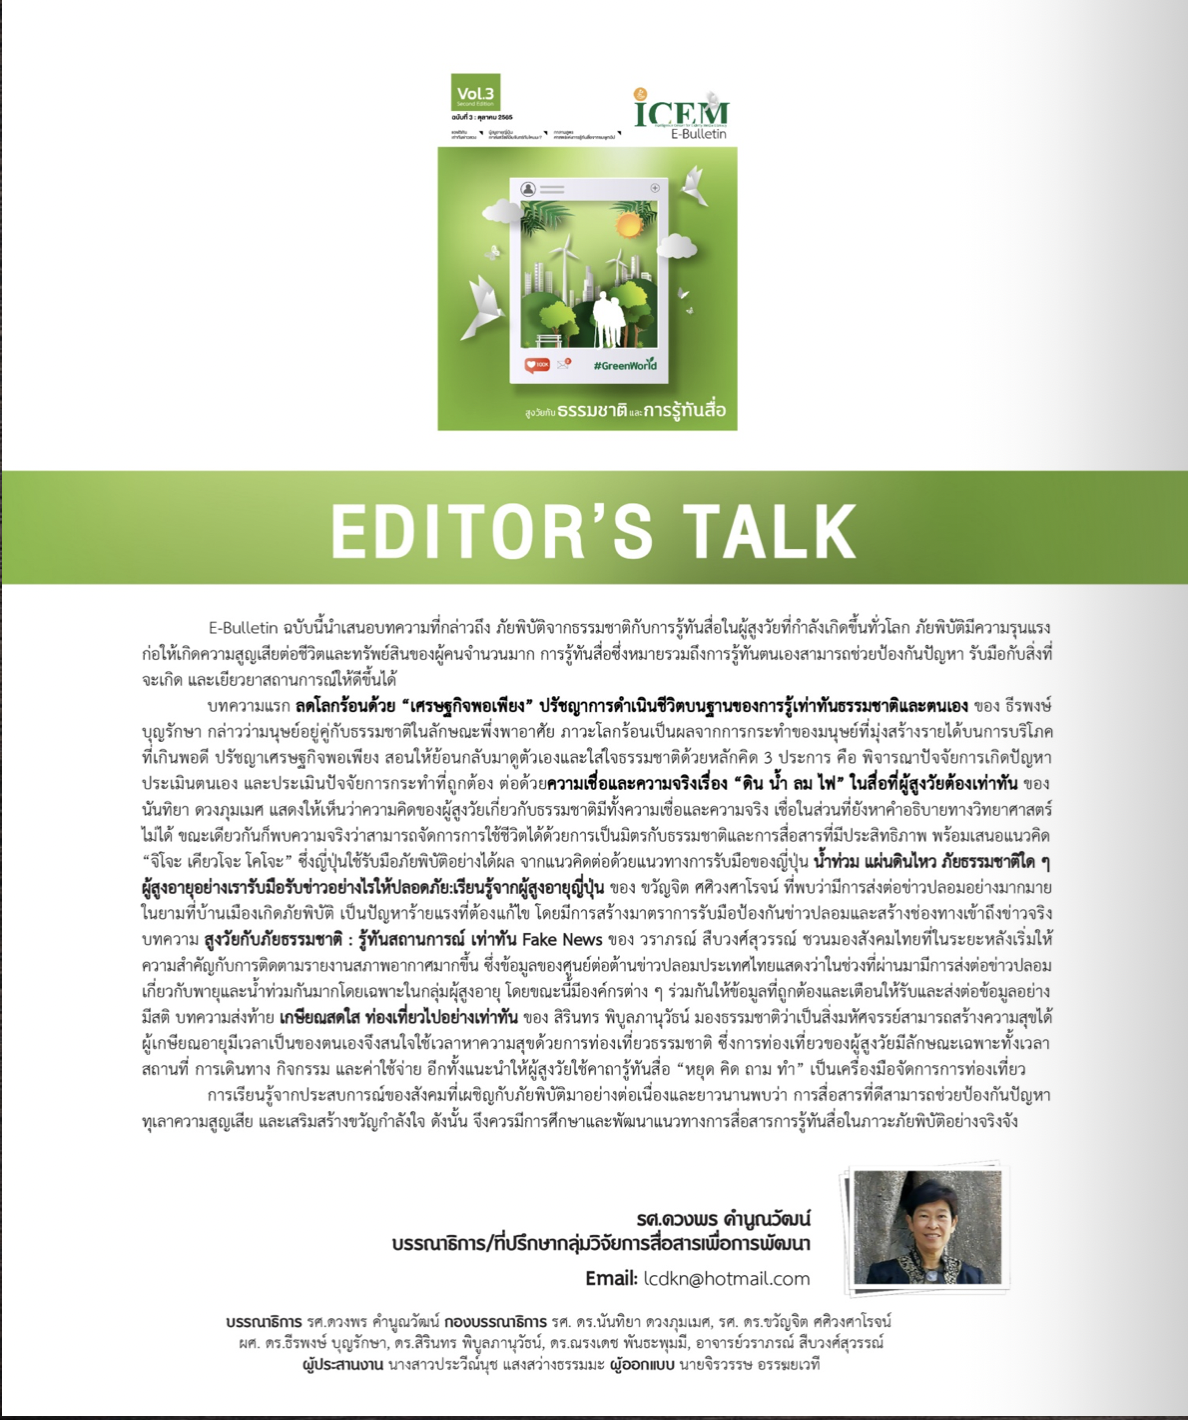 สูงวัยกับธรรมชาติและการรู้ทันสื่อ ICEM E-Bulletin: Vol.3